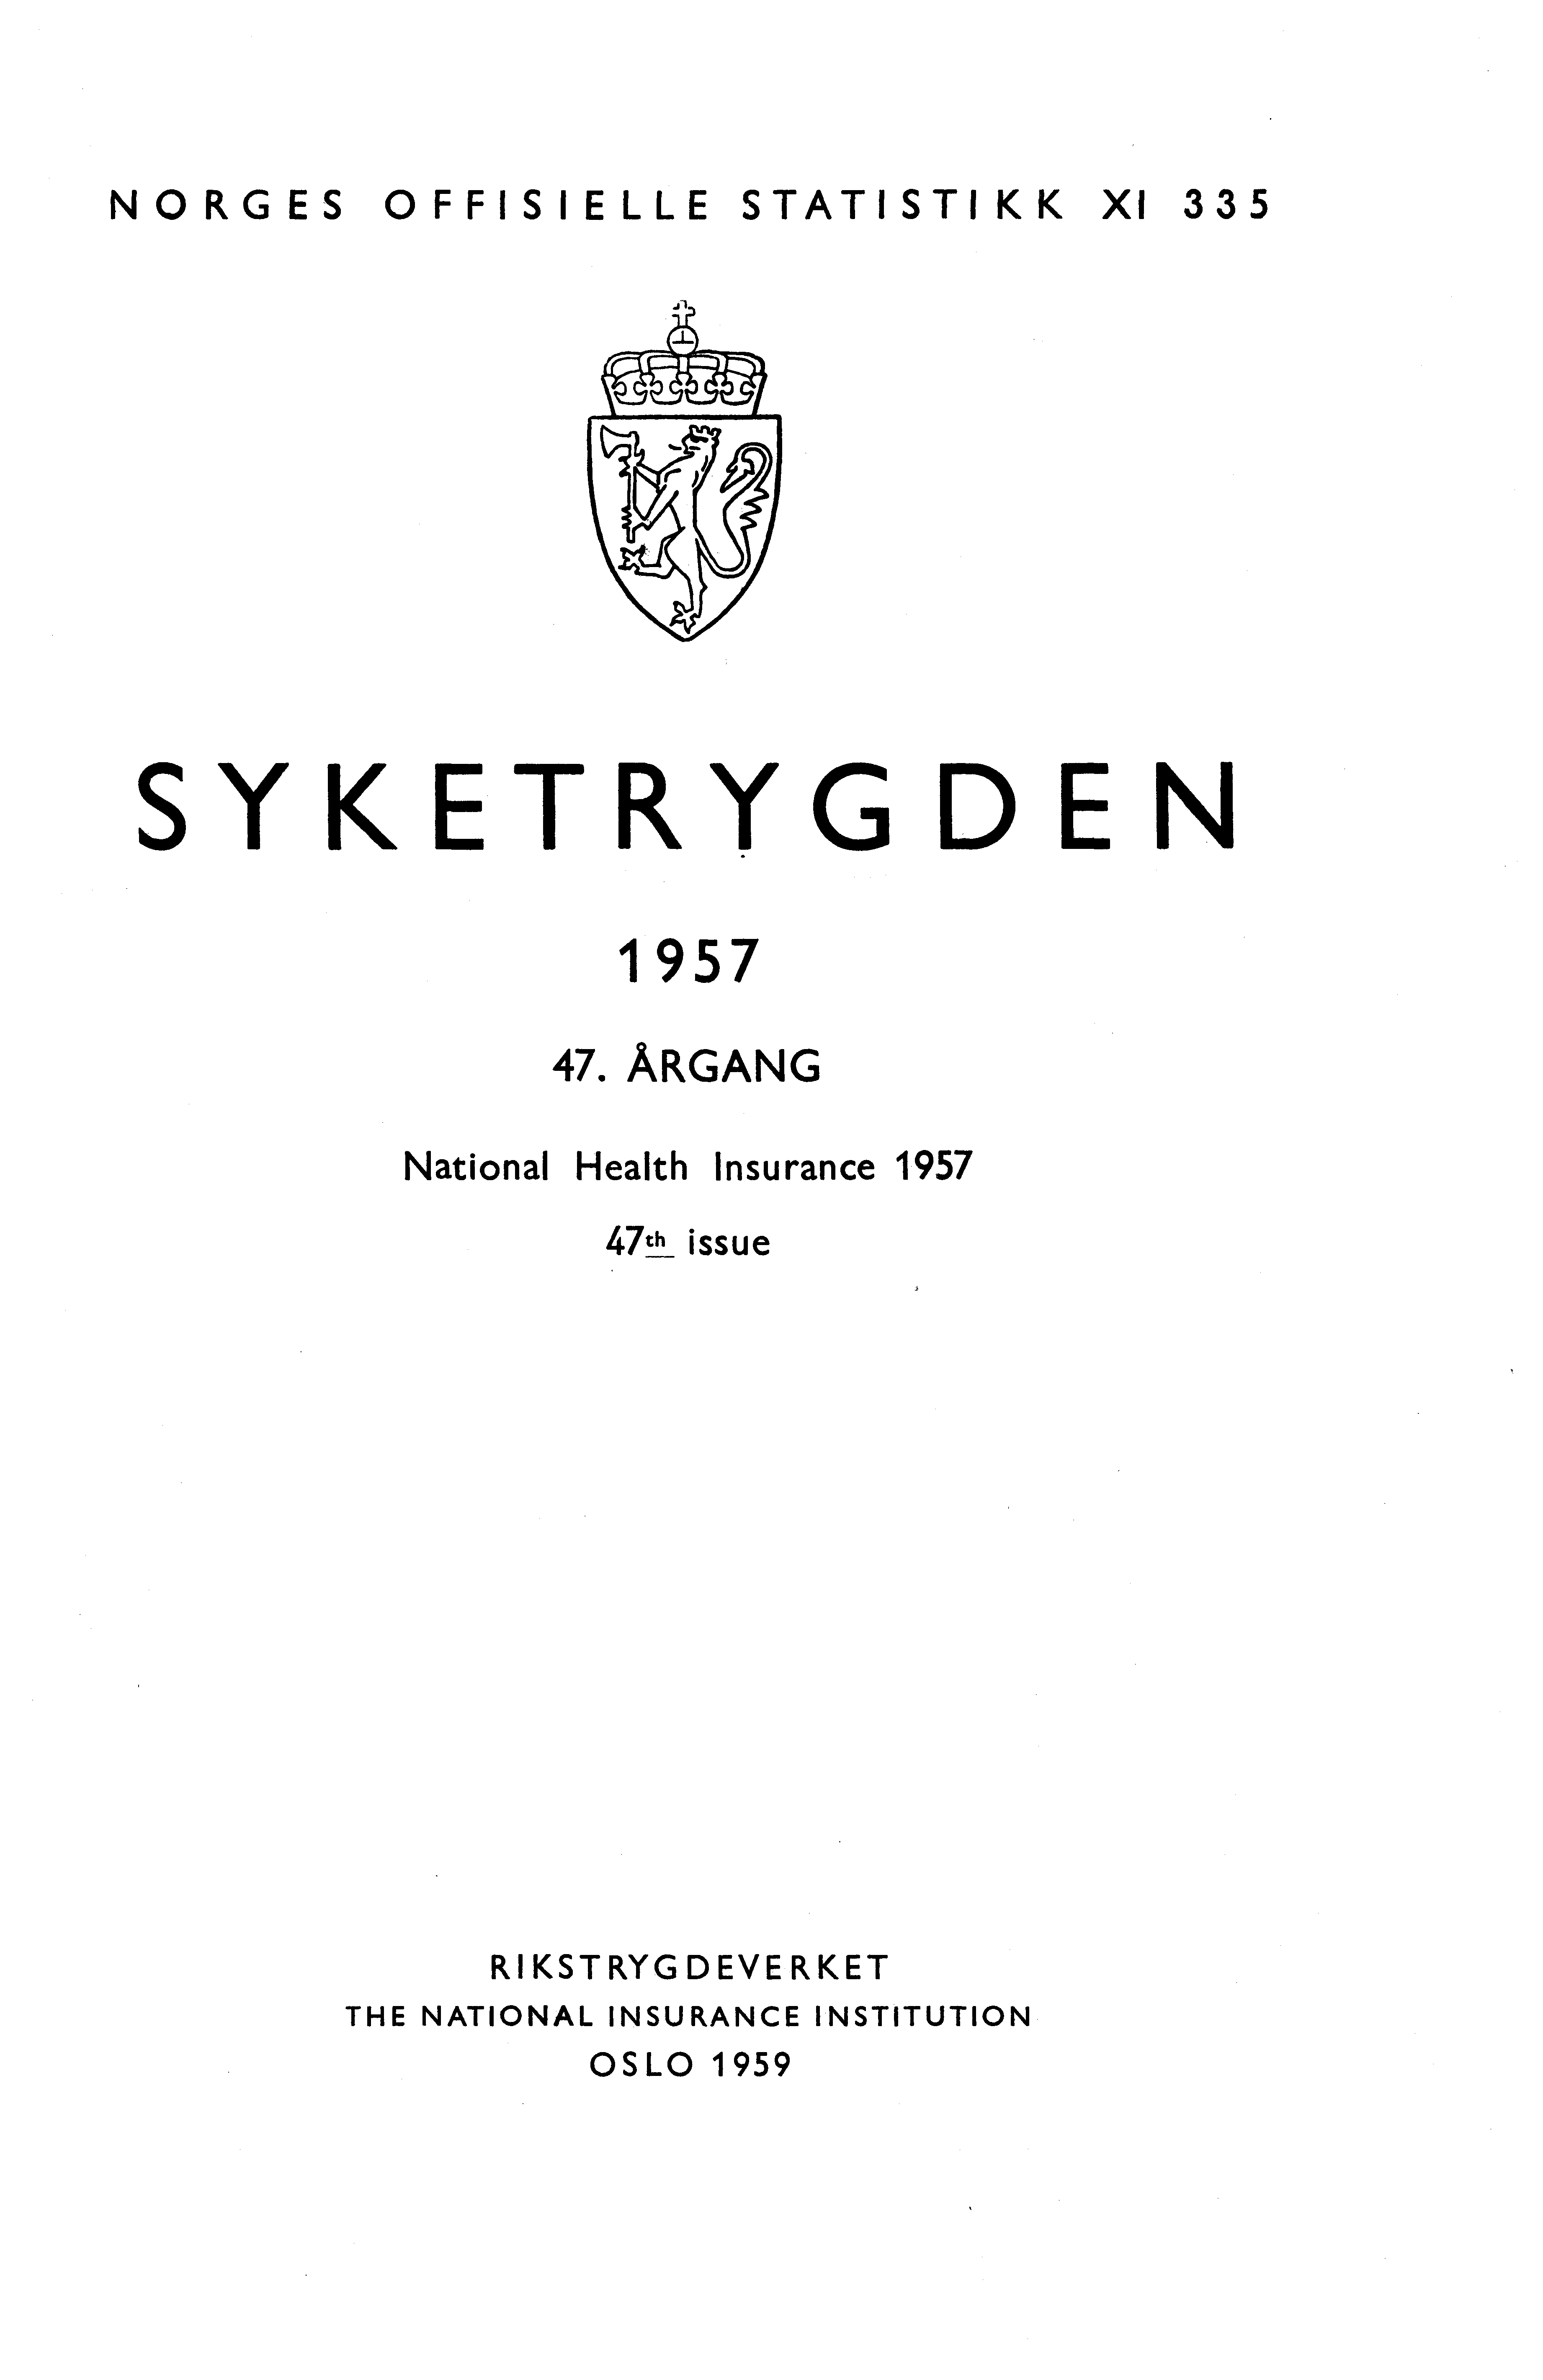 ORGES OFFISIELLE STATISTIKK XI 335 SYKETRYGDE 1957 7 ÅRGAG ational Health